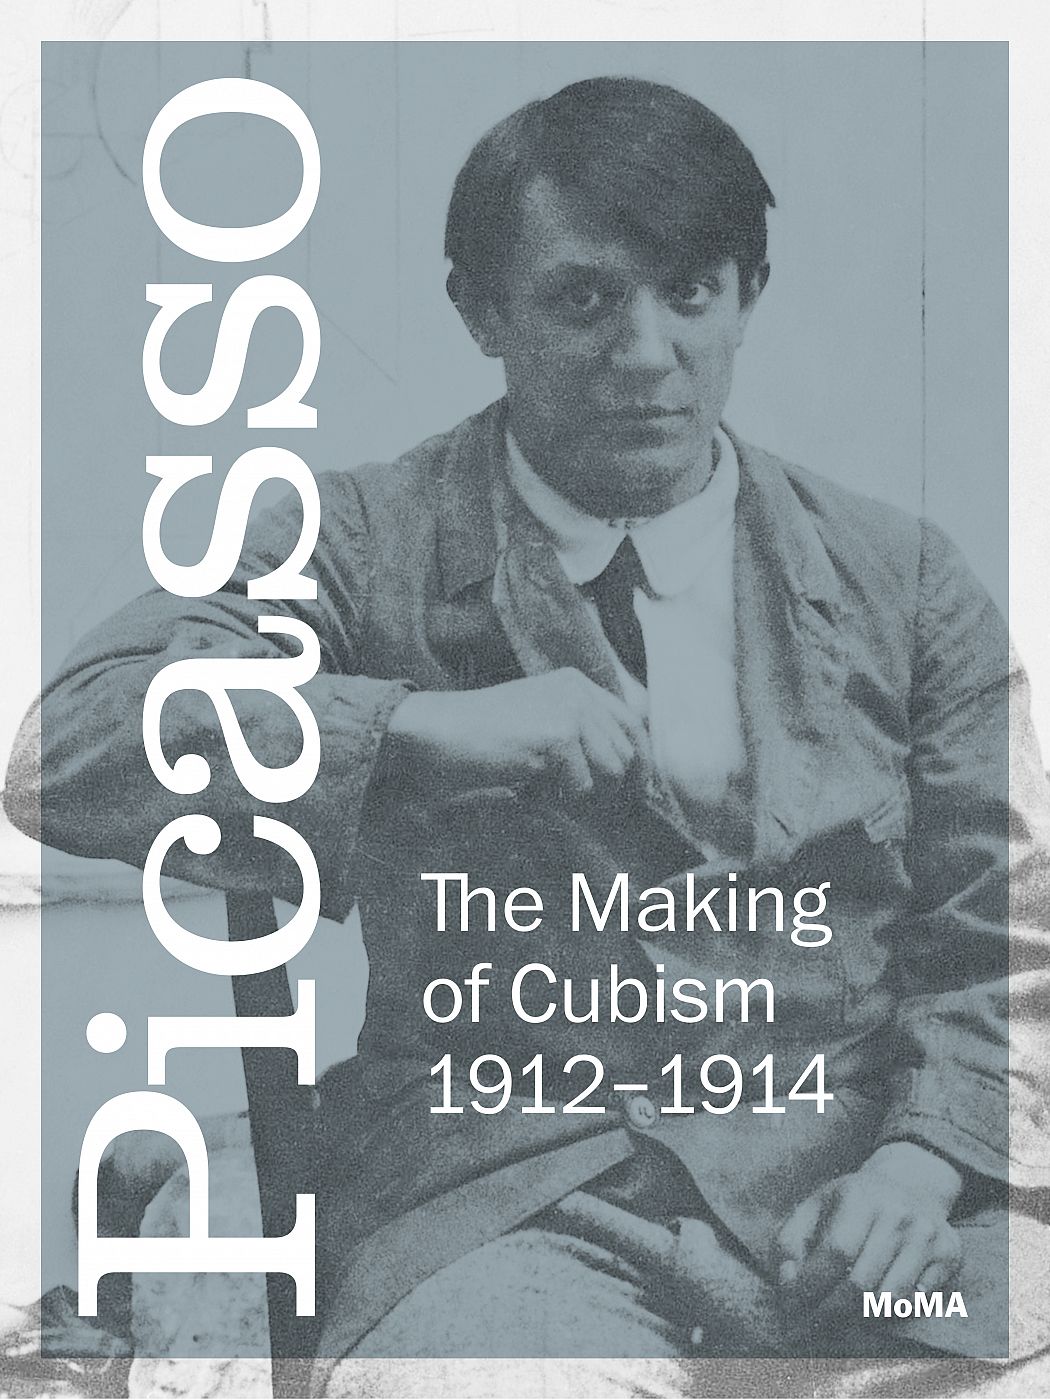 "Picasso: La creación del cubismo 1912-1914"